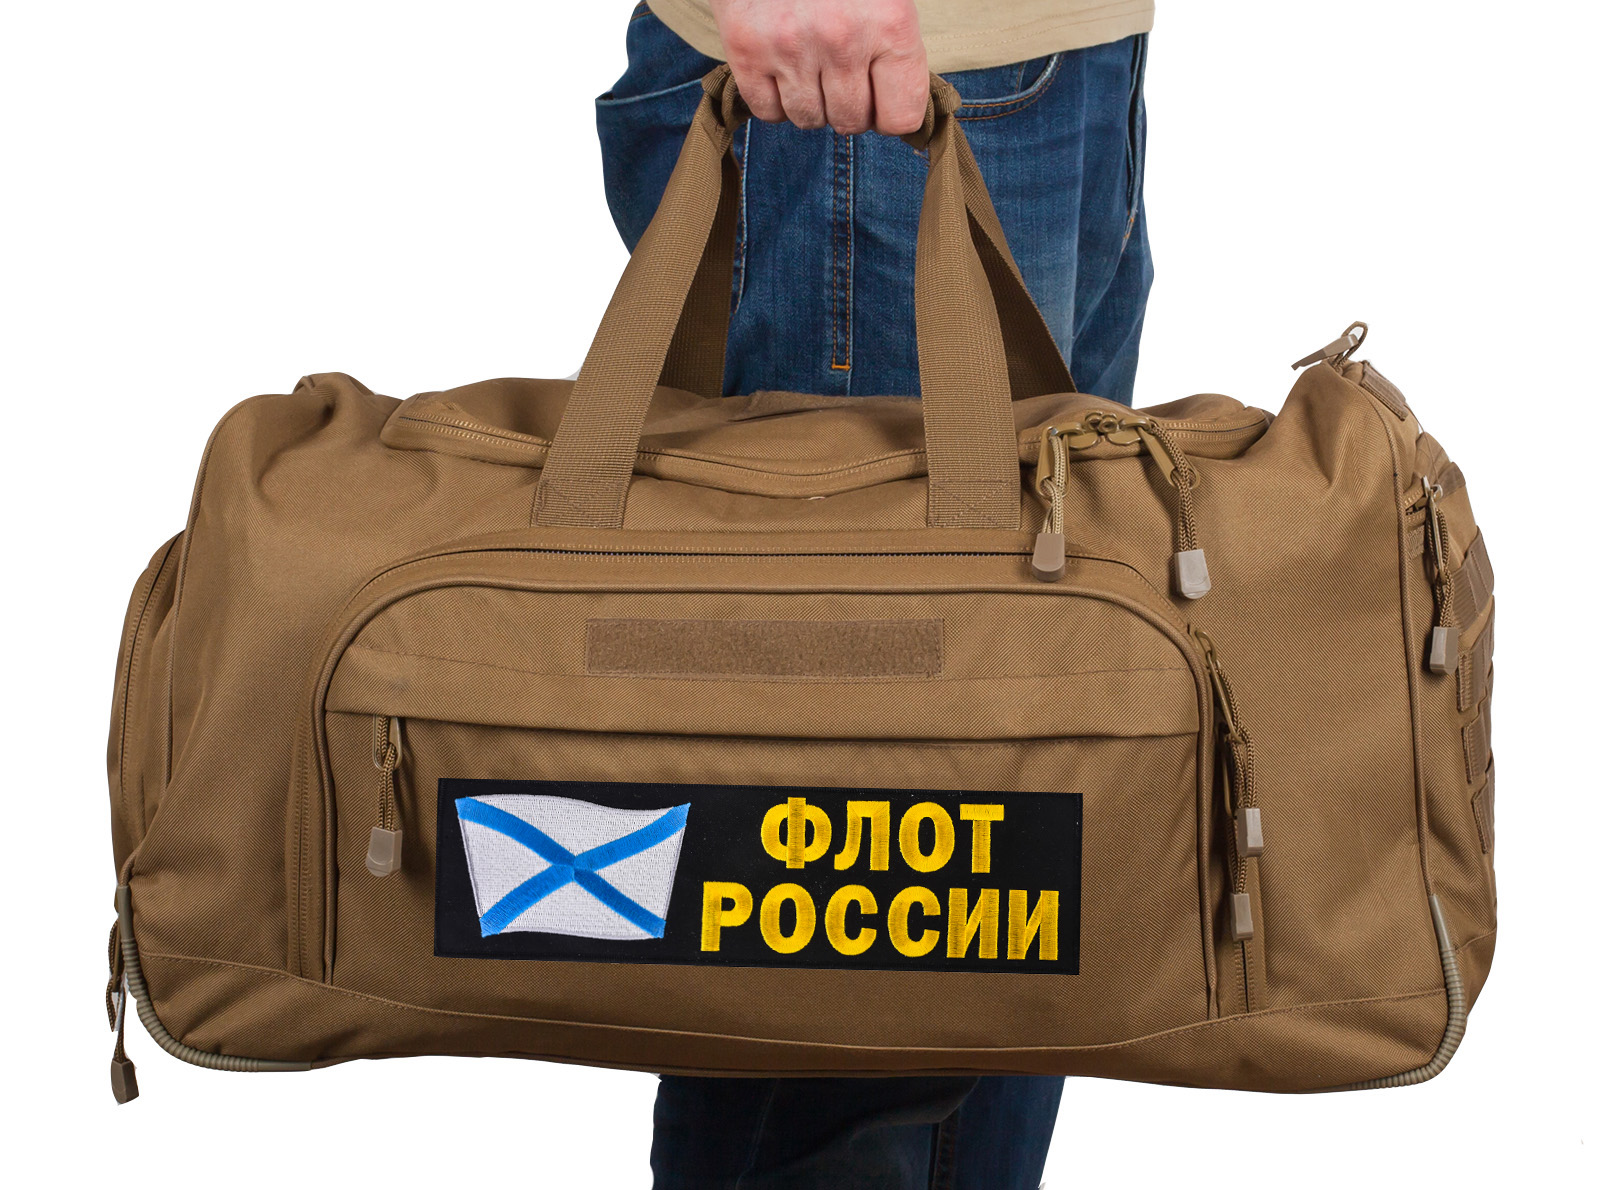 Армейская походная сумка 08032B Coyote с нашивкой Флот России 